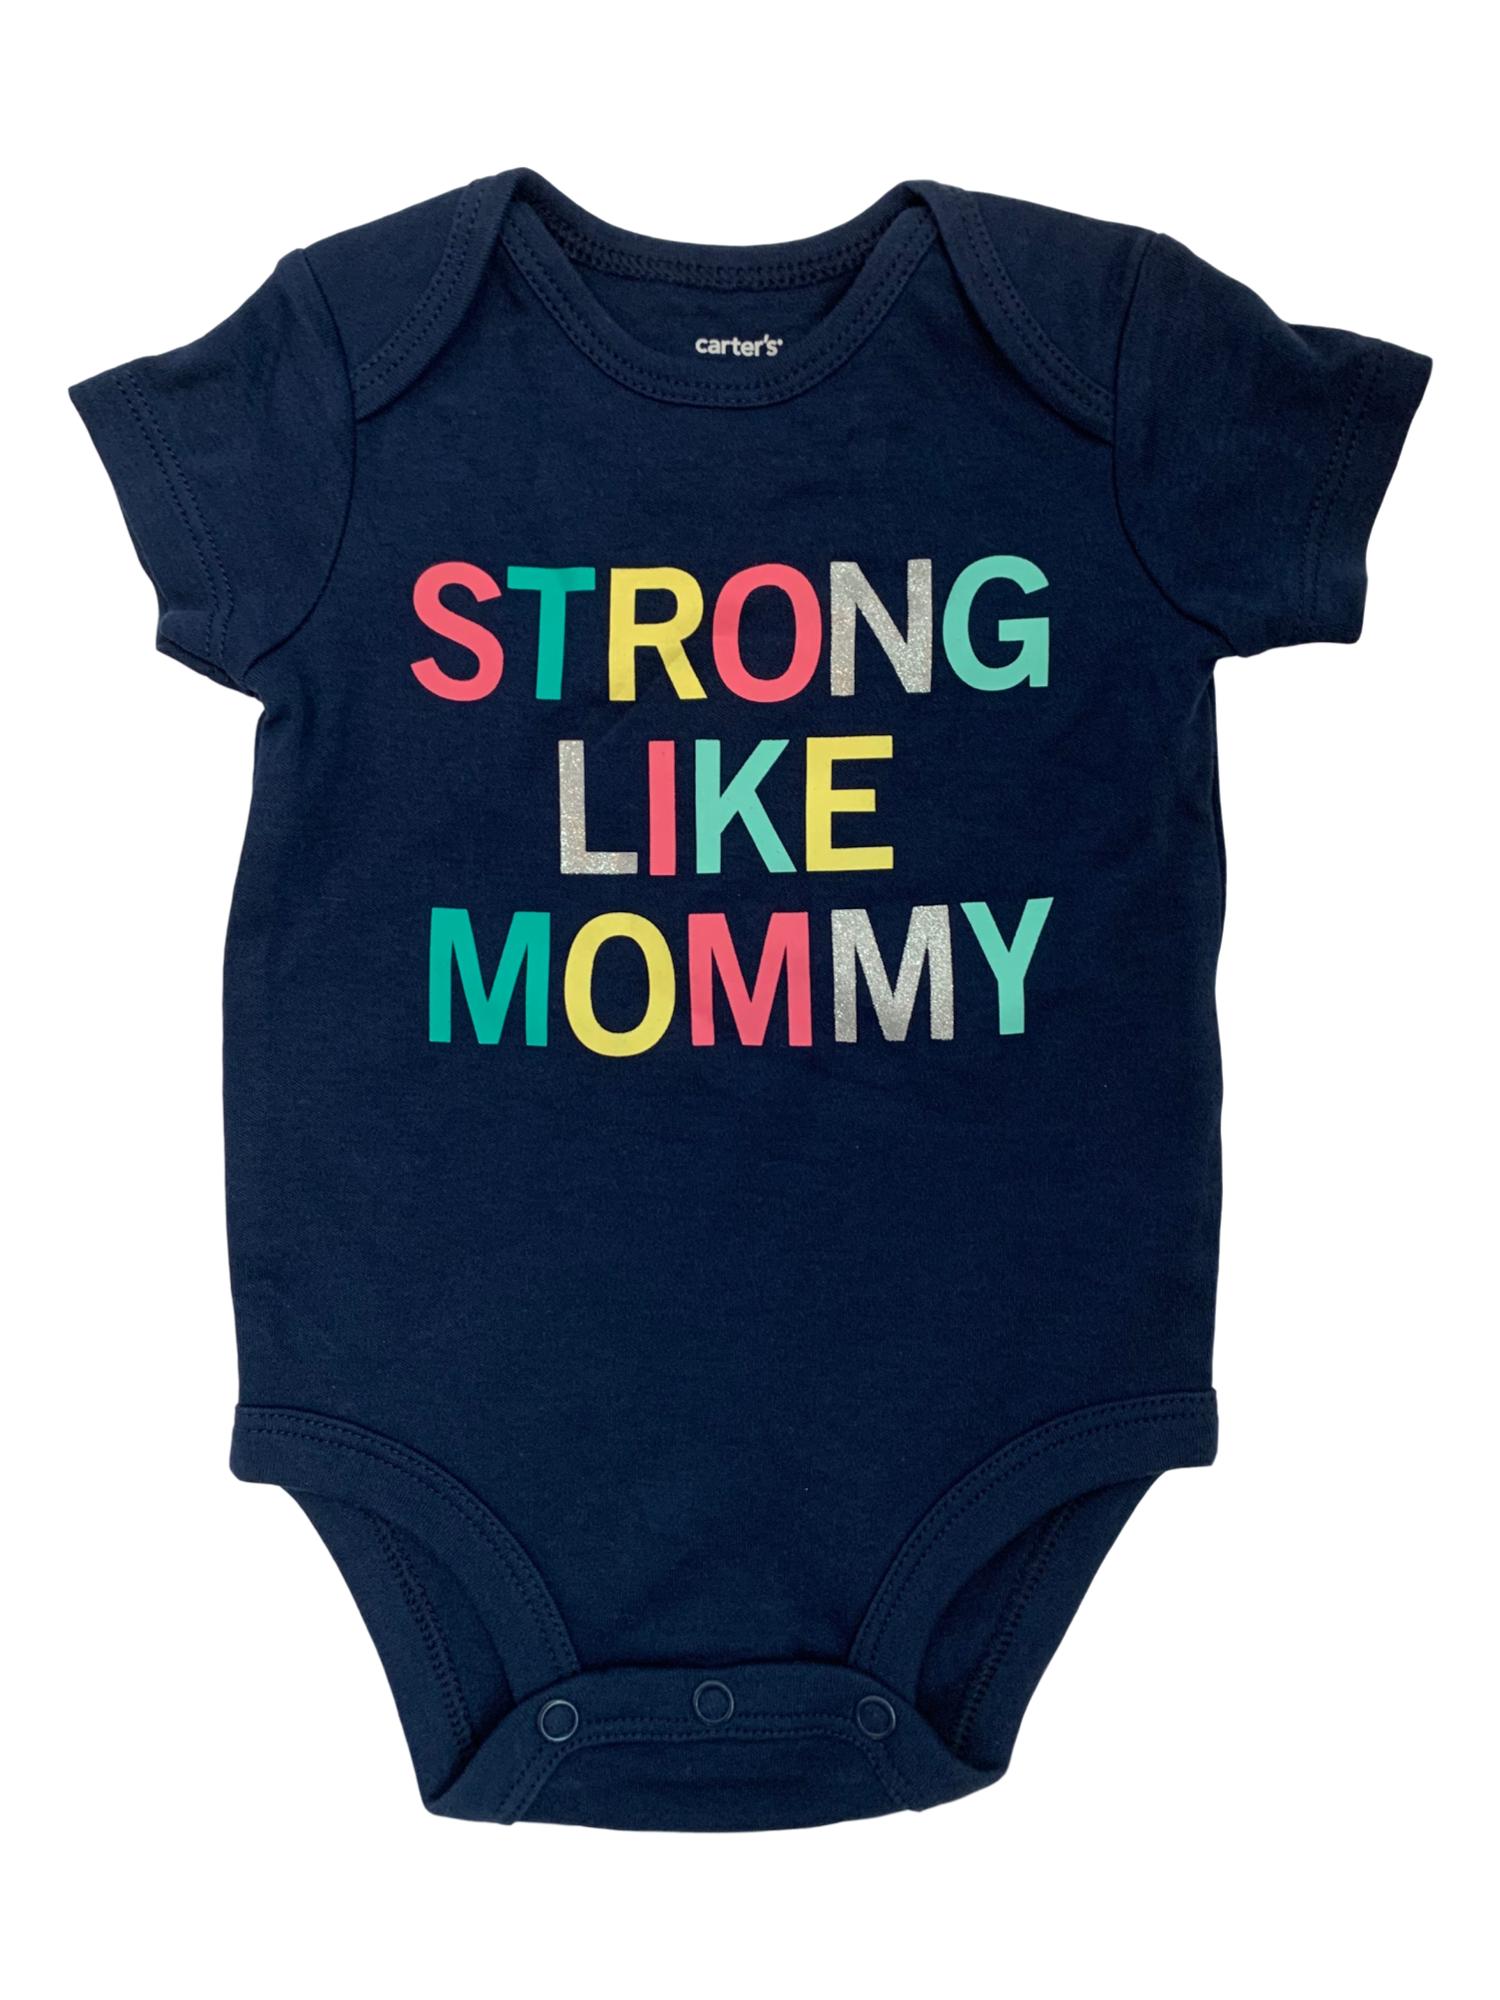 Carter's Infant Girls Navy Blue Strong Like Mommy Short Sleeve Bodysuit Creeper 3M